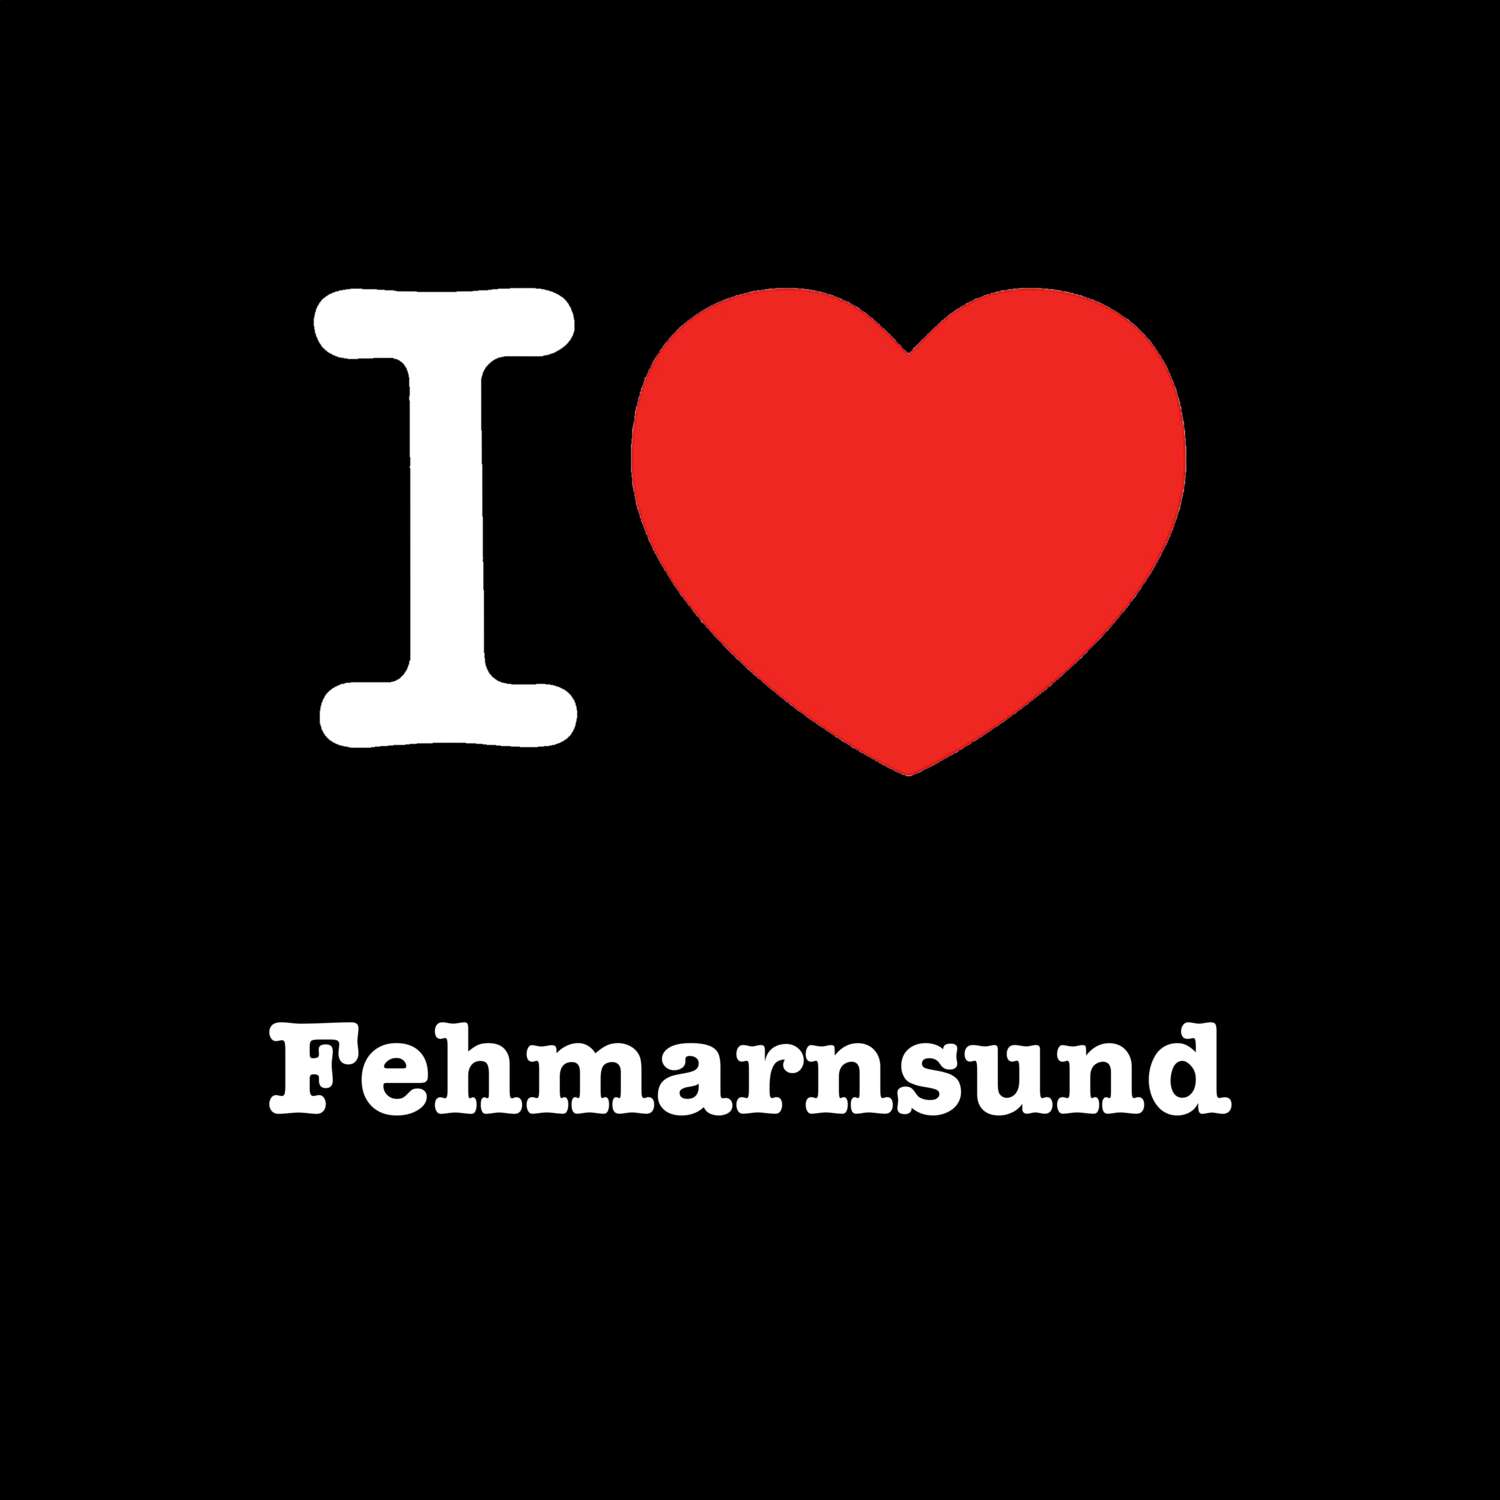 Fehmarnsund T-Shirt »I love«